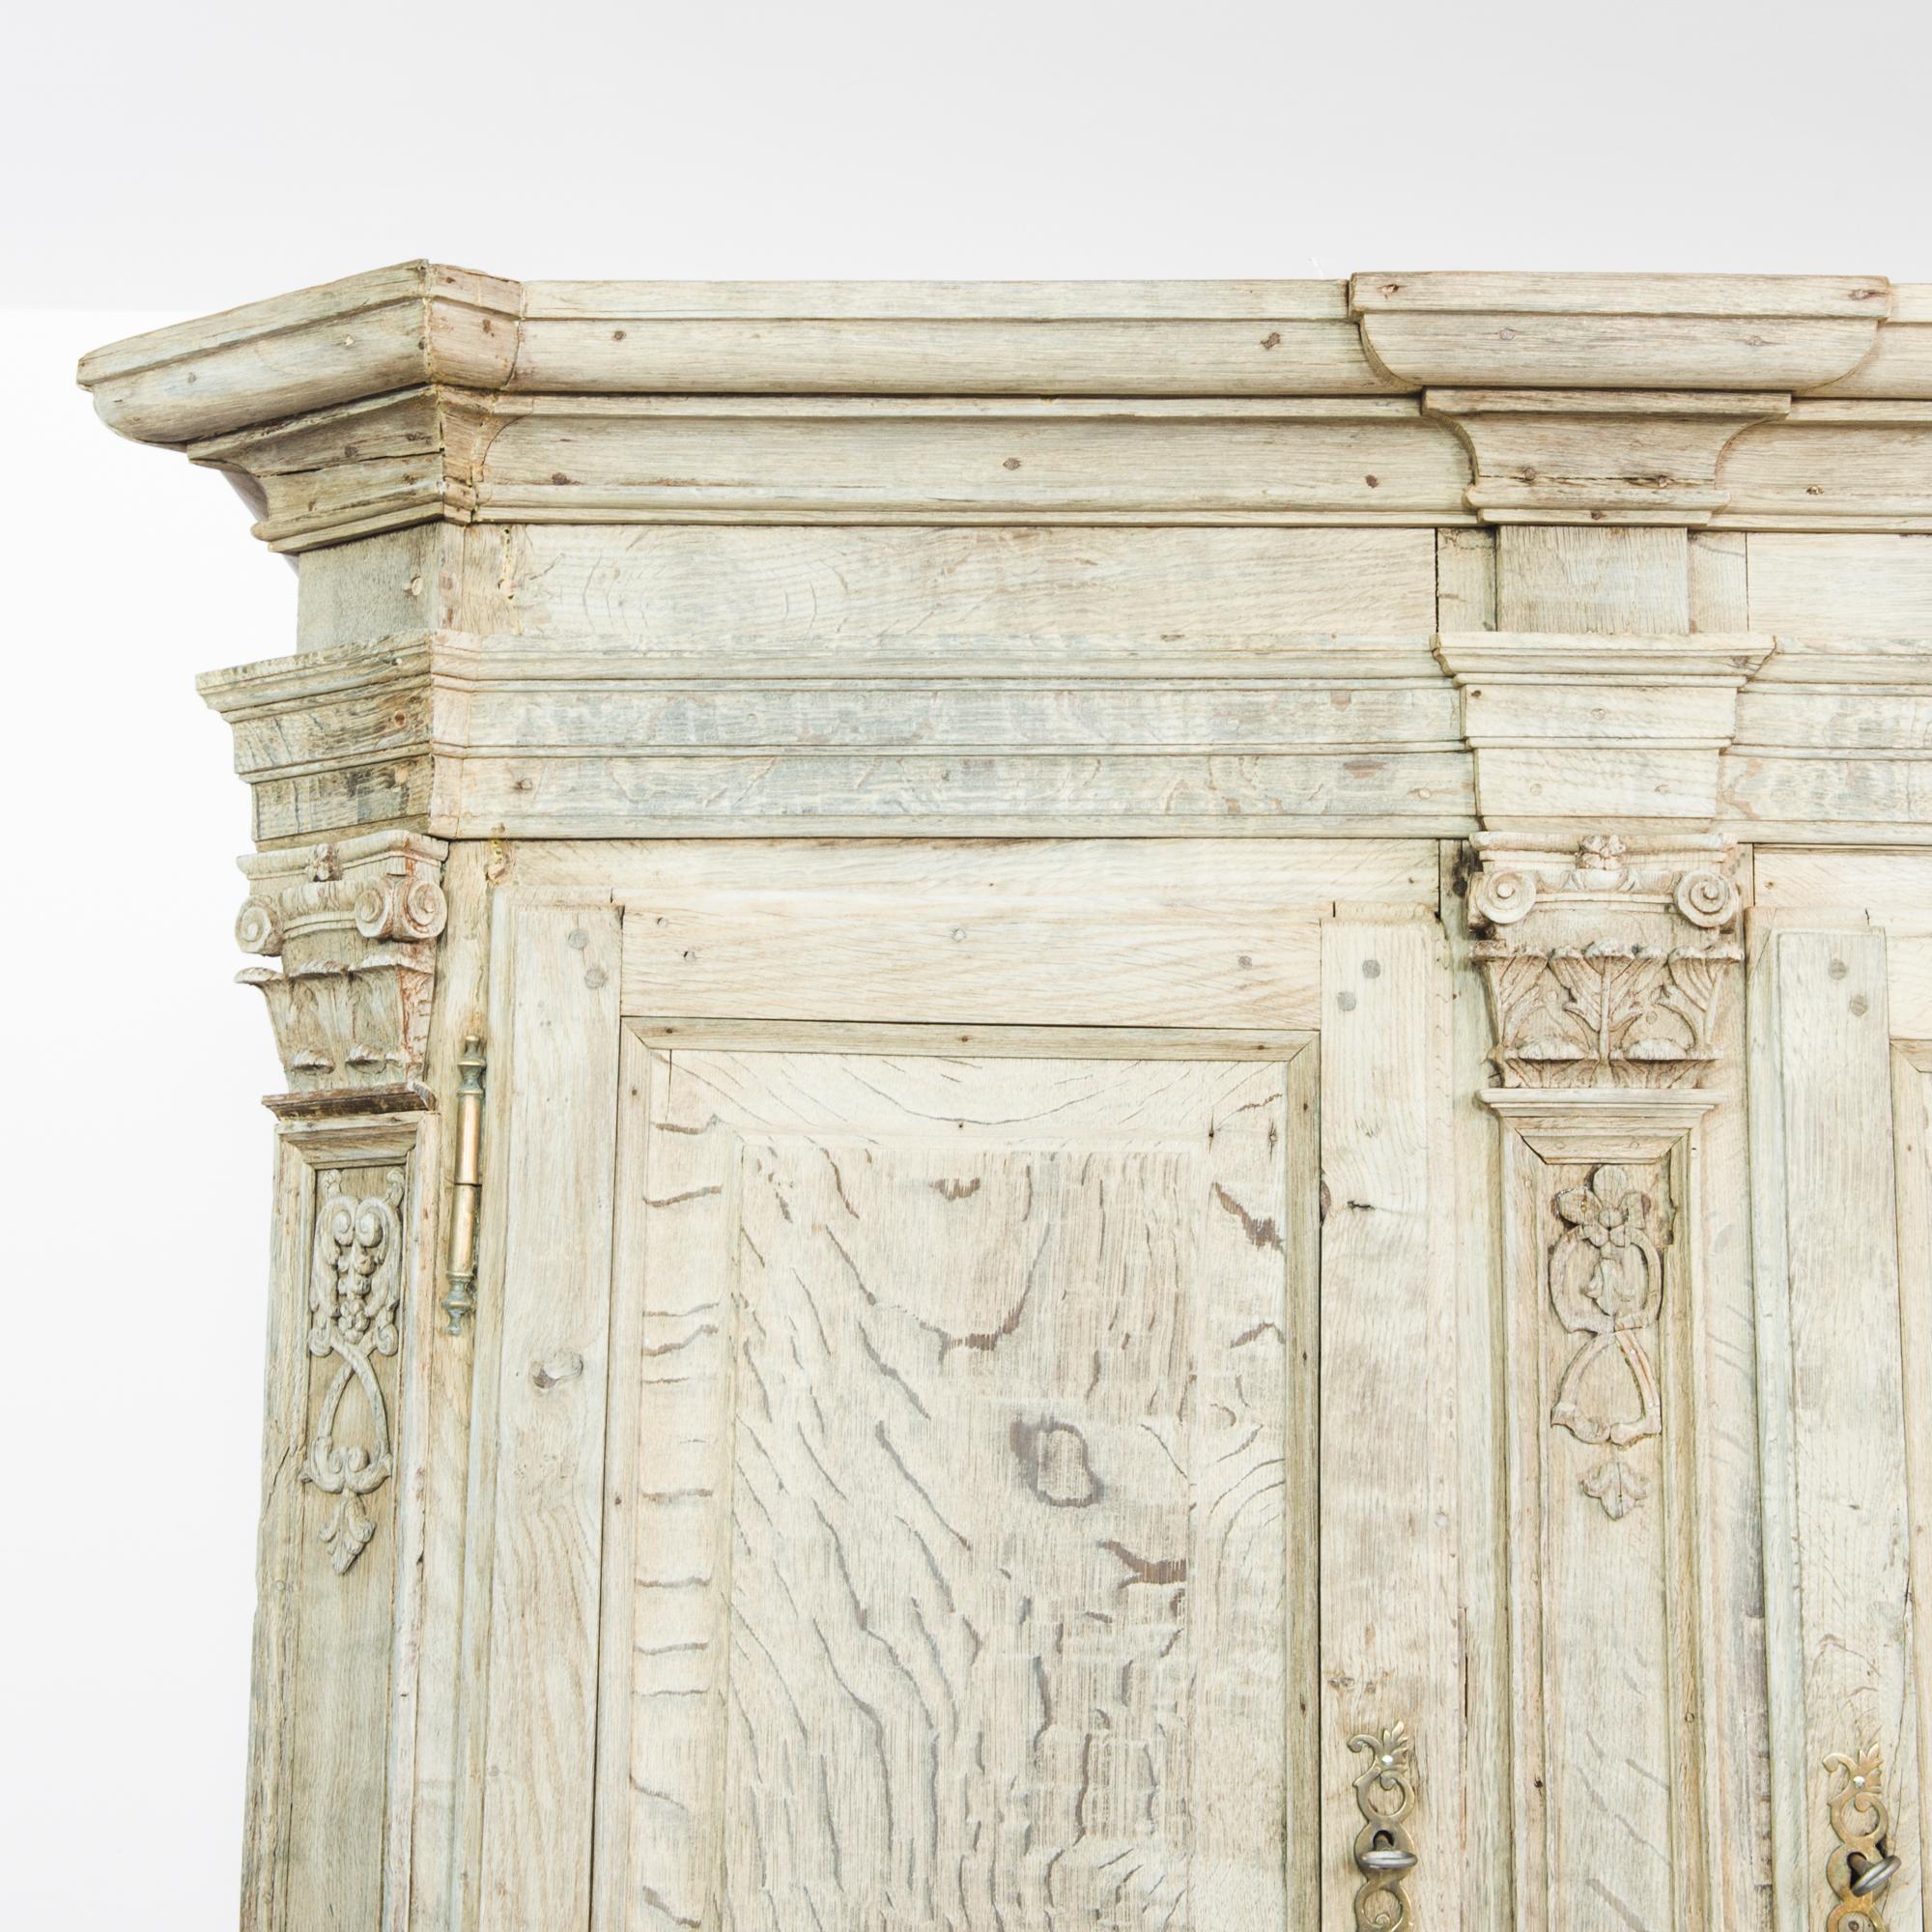 Armoire en chêne blanchi de Belgique, produite vers 1780. En excellent état de fonctionnement, ce cabinet du XVIIIe siècle est une trouvaille extraordinaire. Presque aussi large que haute, cette pièce comporte deux niveaux d'armoires doubles